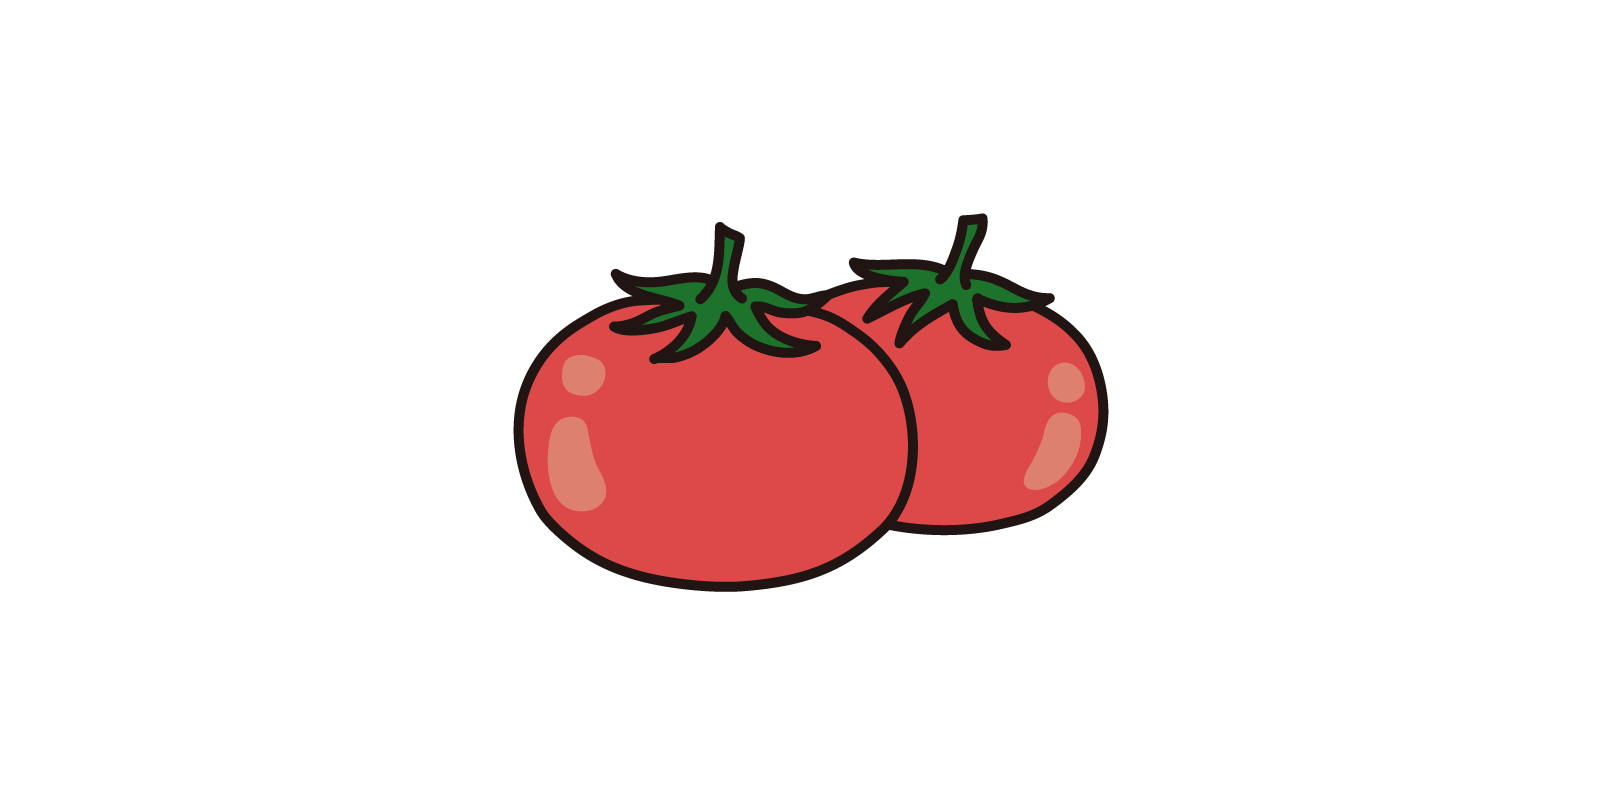 トマト 無料で使える フリーイラストwebサイト かくすた